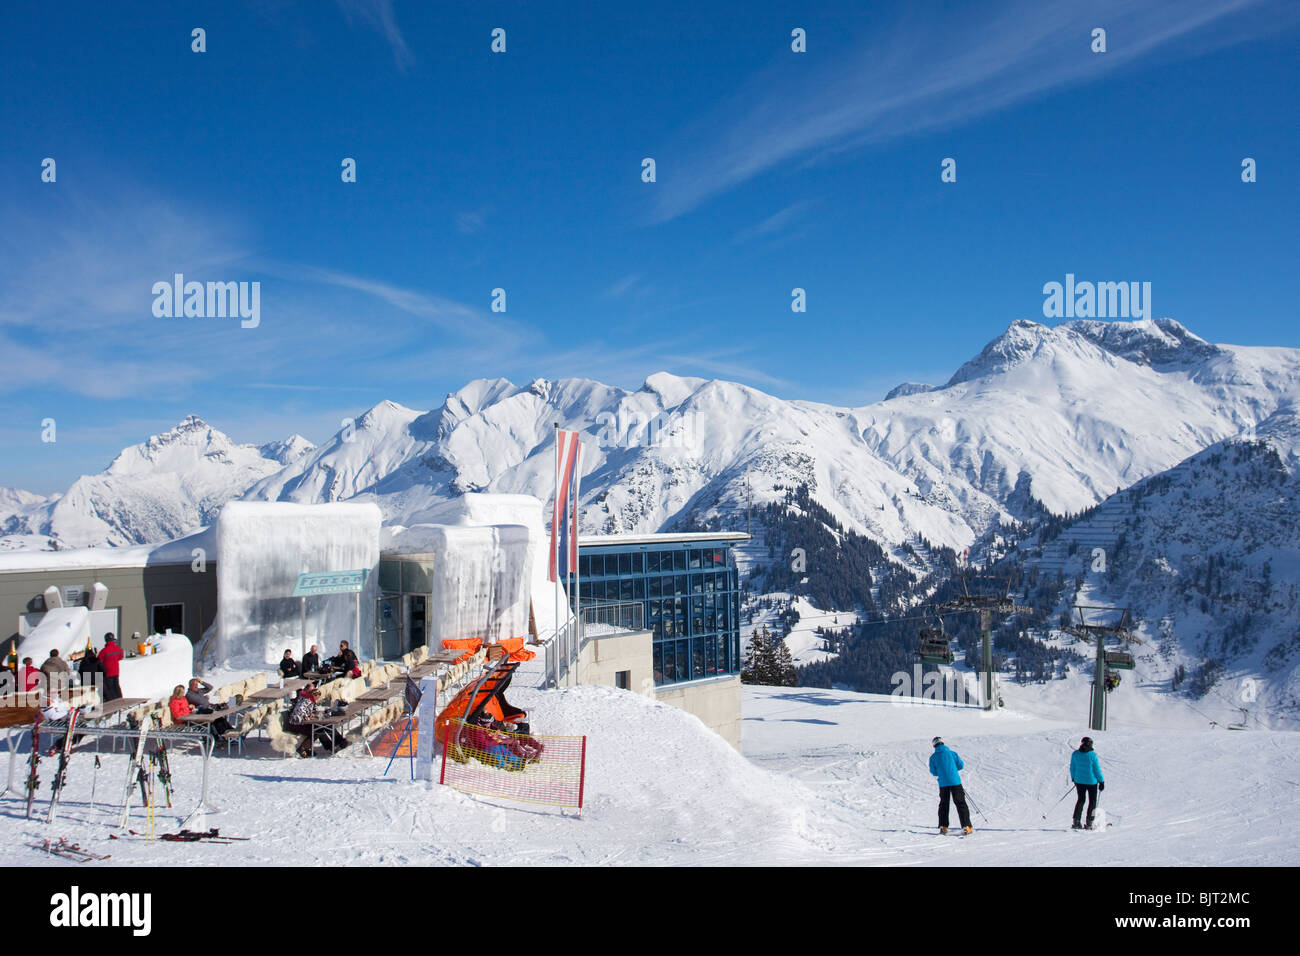 Les skieurs de prendre un verre au bar de glace Lech près de St Saint Anton am Arlberg En hiver neige Alpes autrichiennes Autriche Europe Banque D'Images